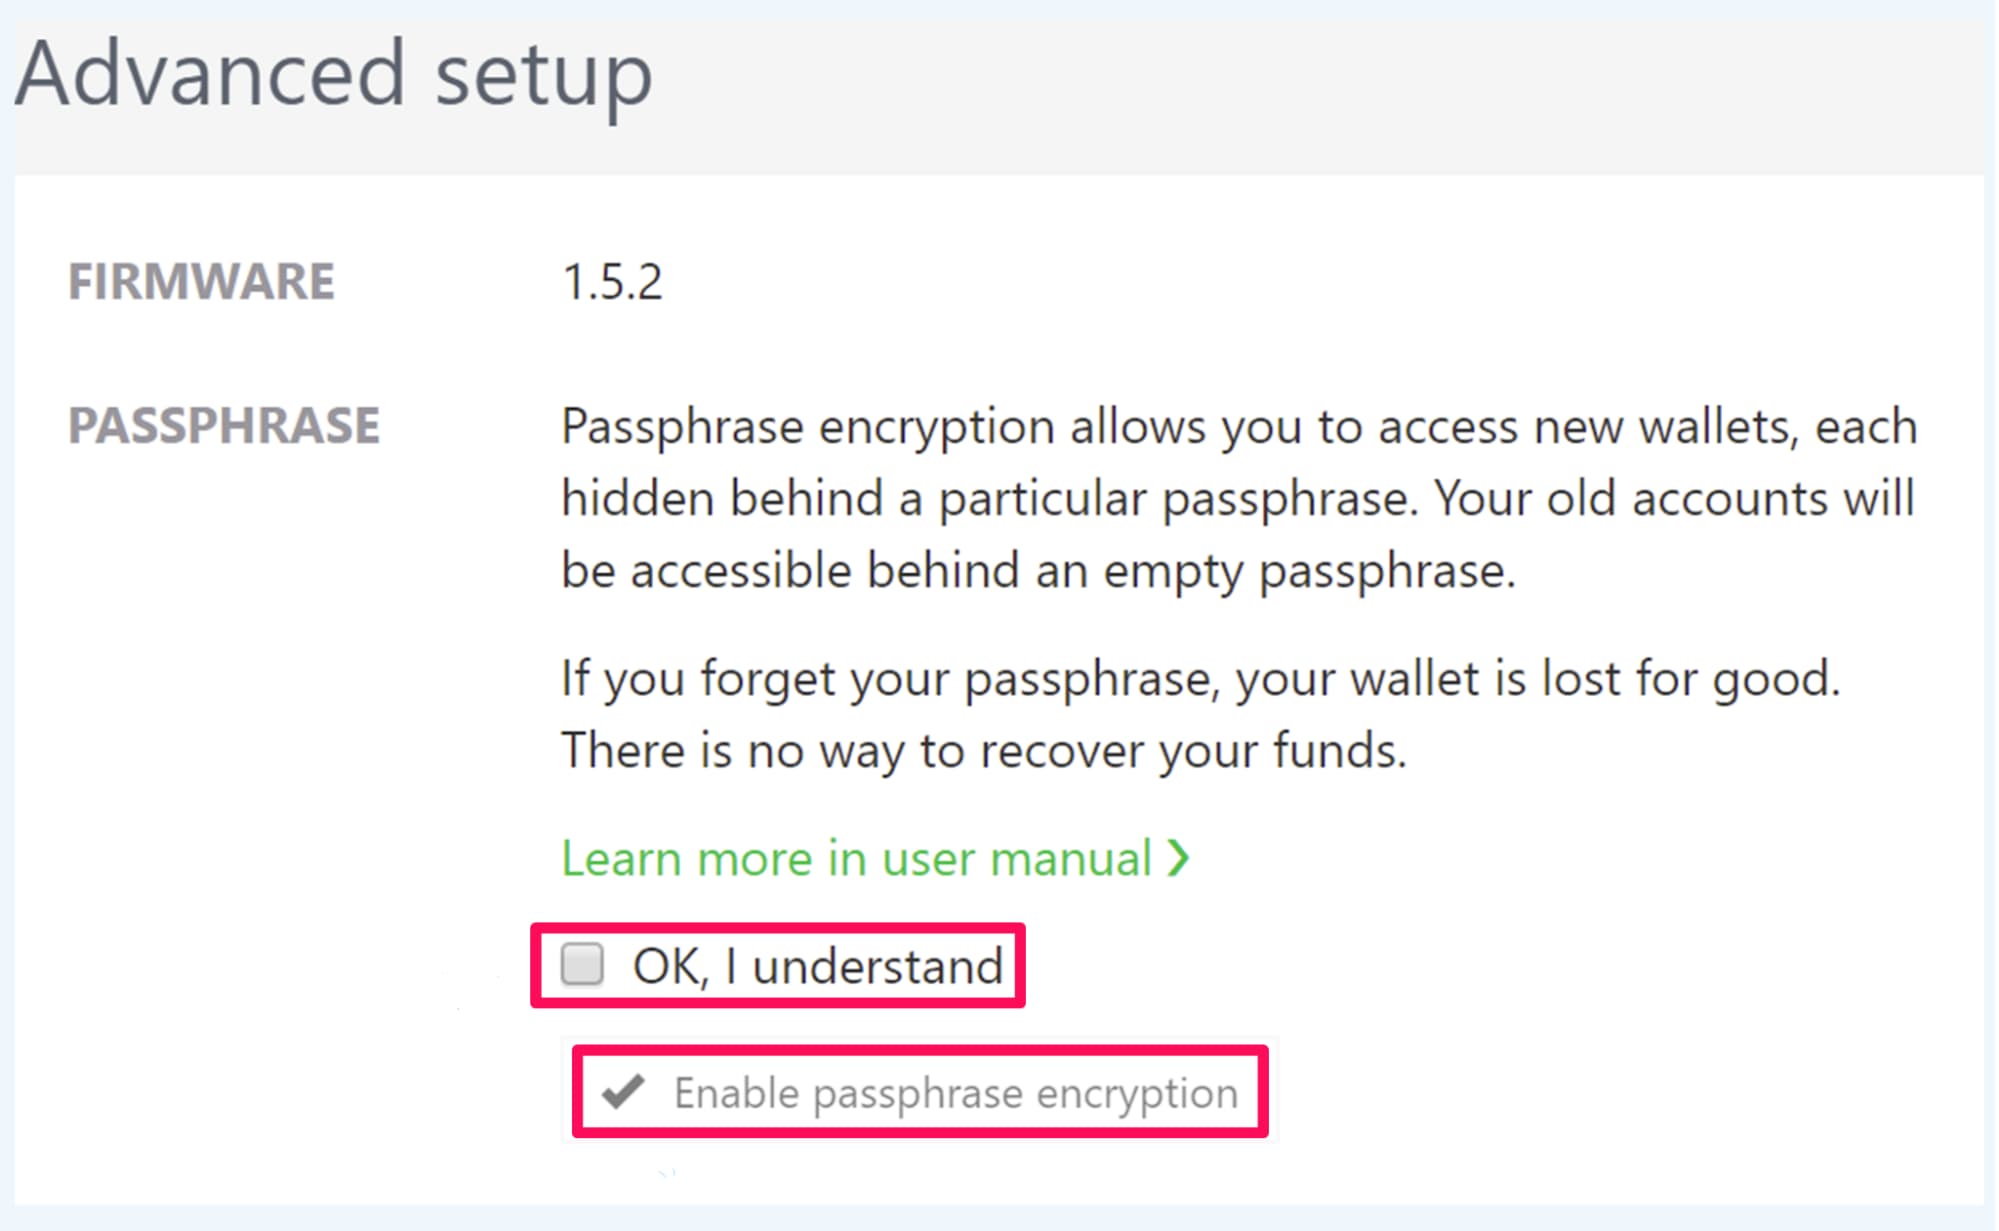 Enable passphrase encryption